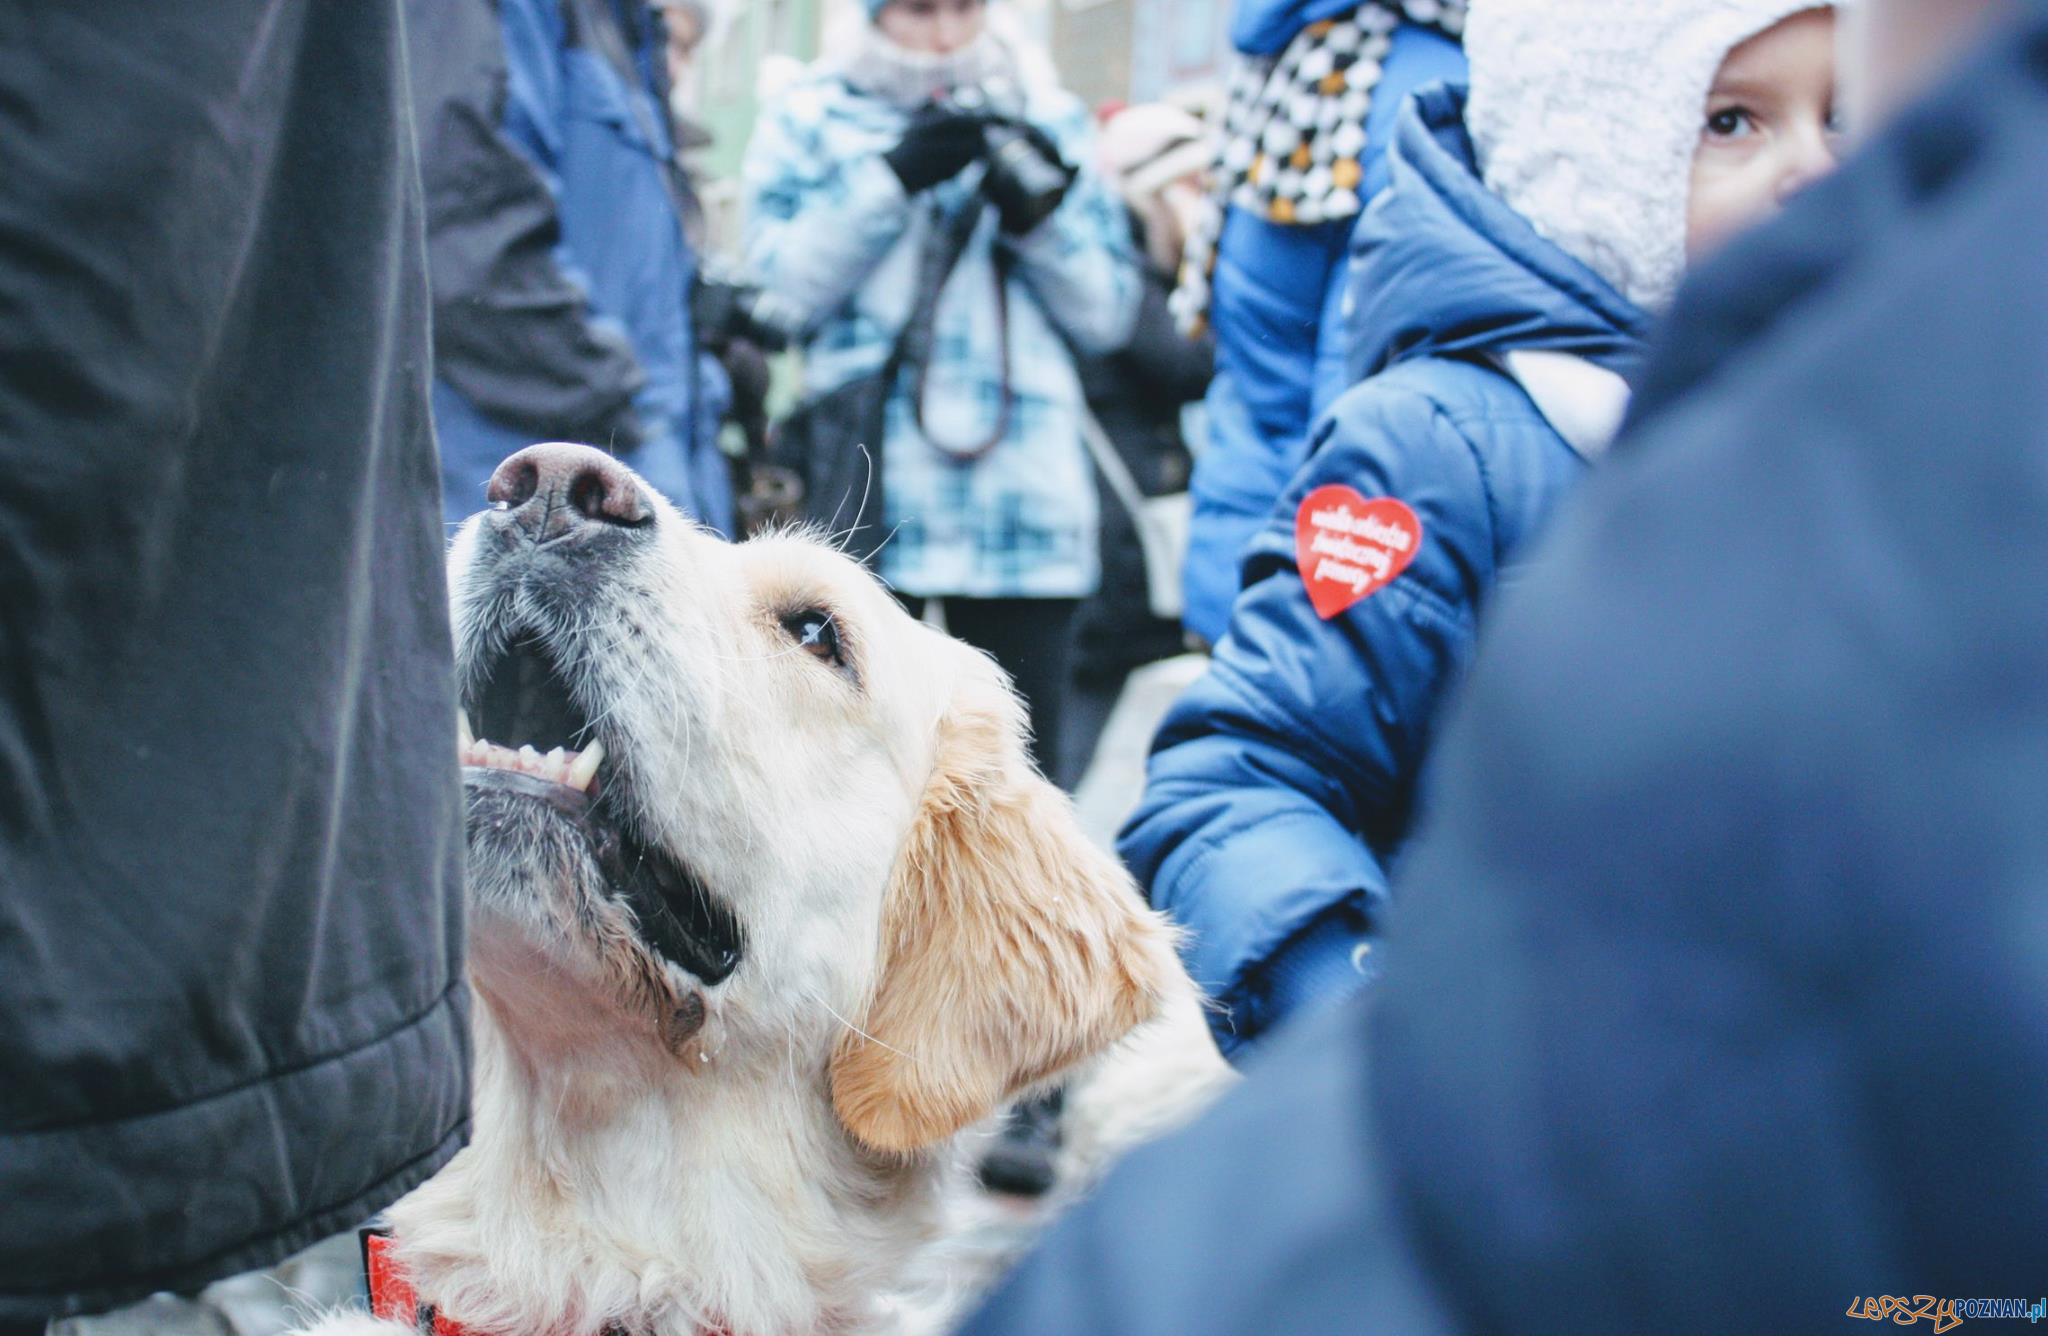 40 psów rasy Golden Retriever będzie kwestować w Poznaniu  Foto: 